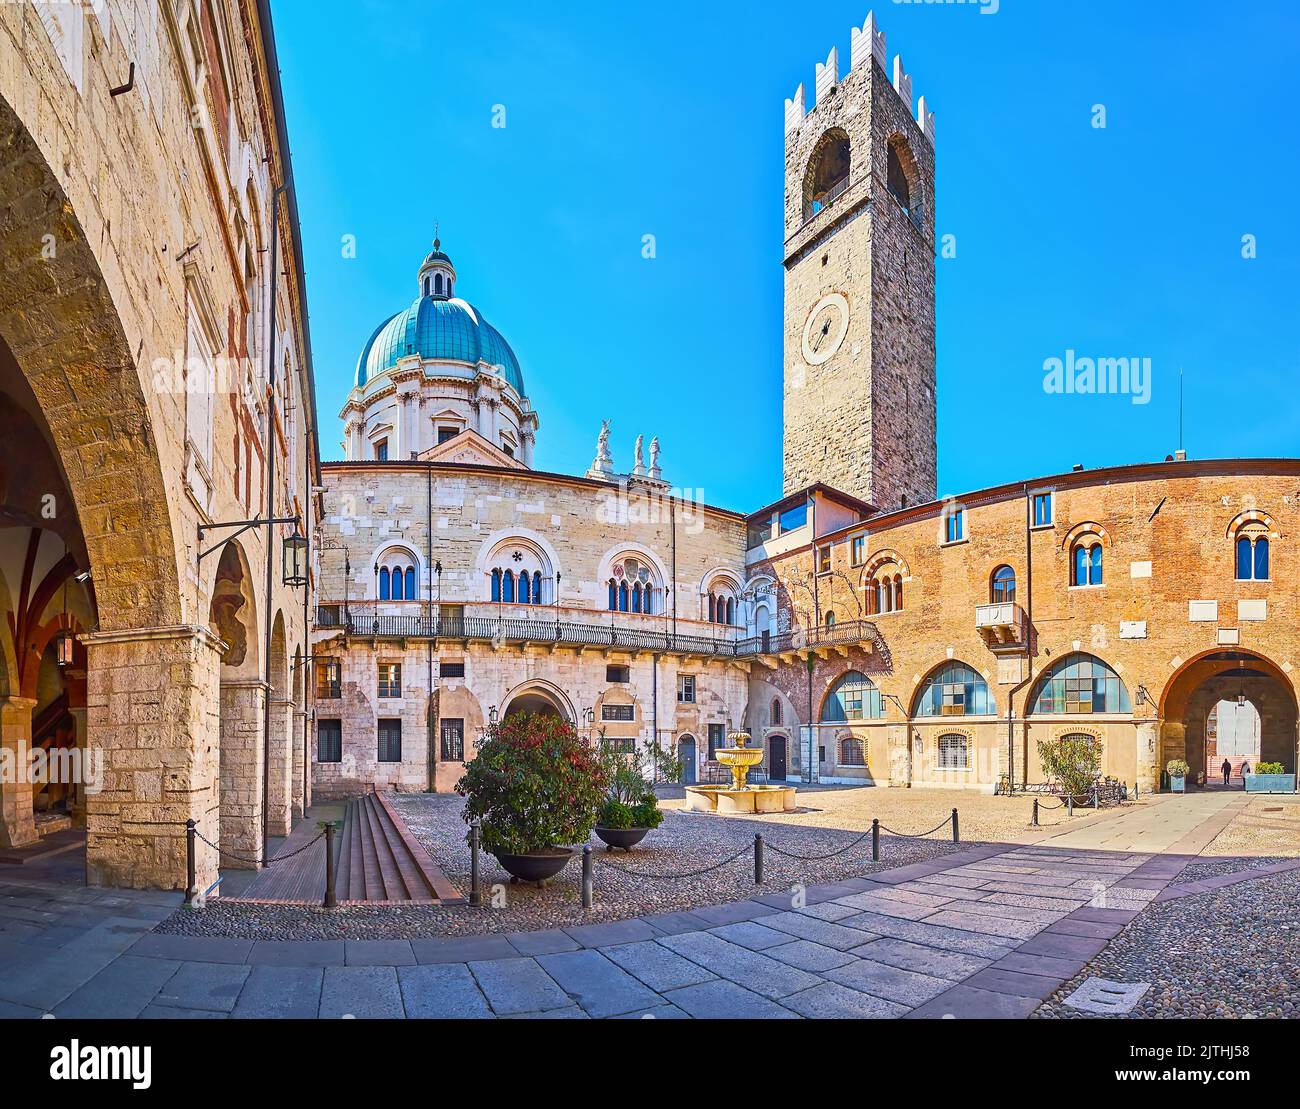 Panorama de la cour du Palazzo Broletto avec fontaine en pierre sculptée, tour Torre del pegol et arcade avec fresques, Brescia, Lombardie, Italie Banque D'Images